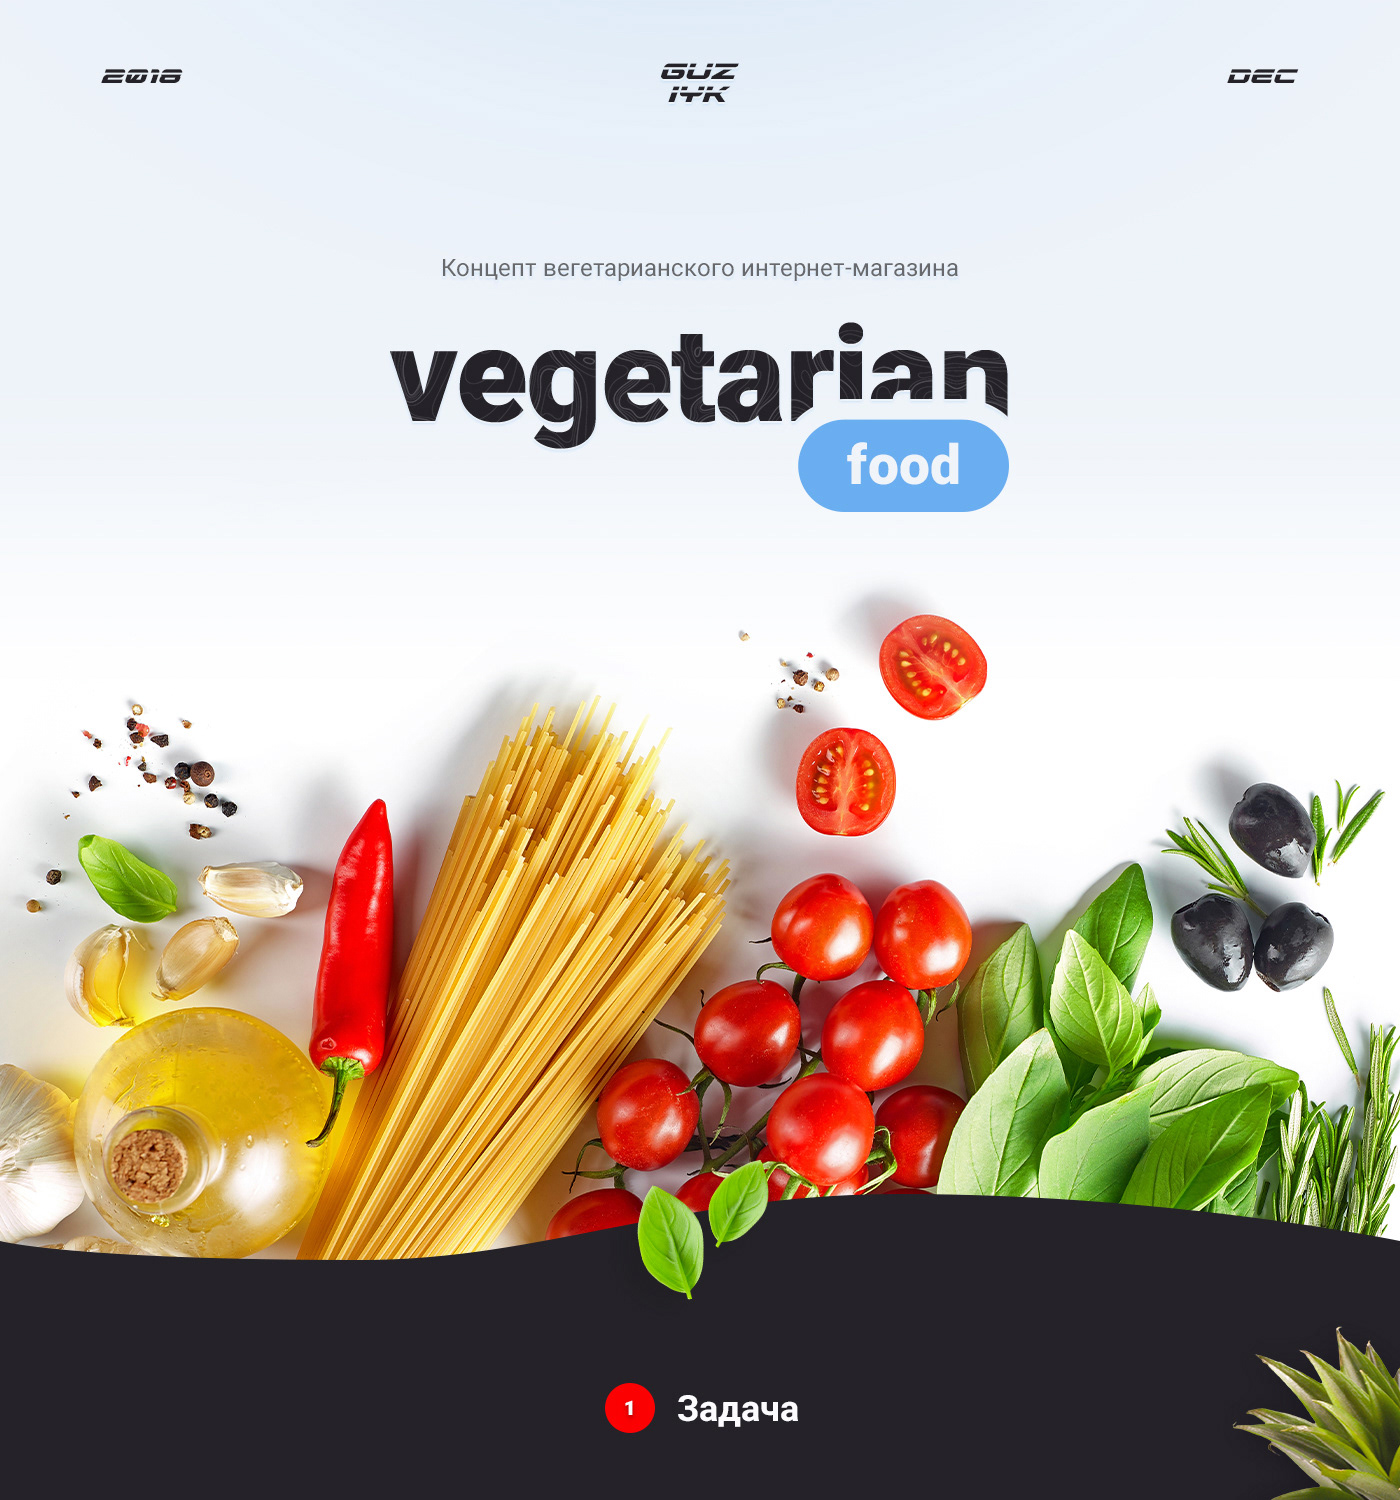 вегетарианский веган интернет-магазин портфолио современный дизайн минимализм еда концепт дизайн презентация